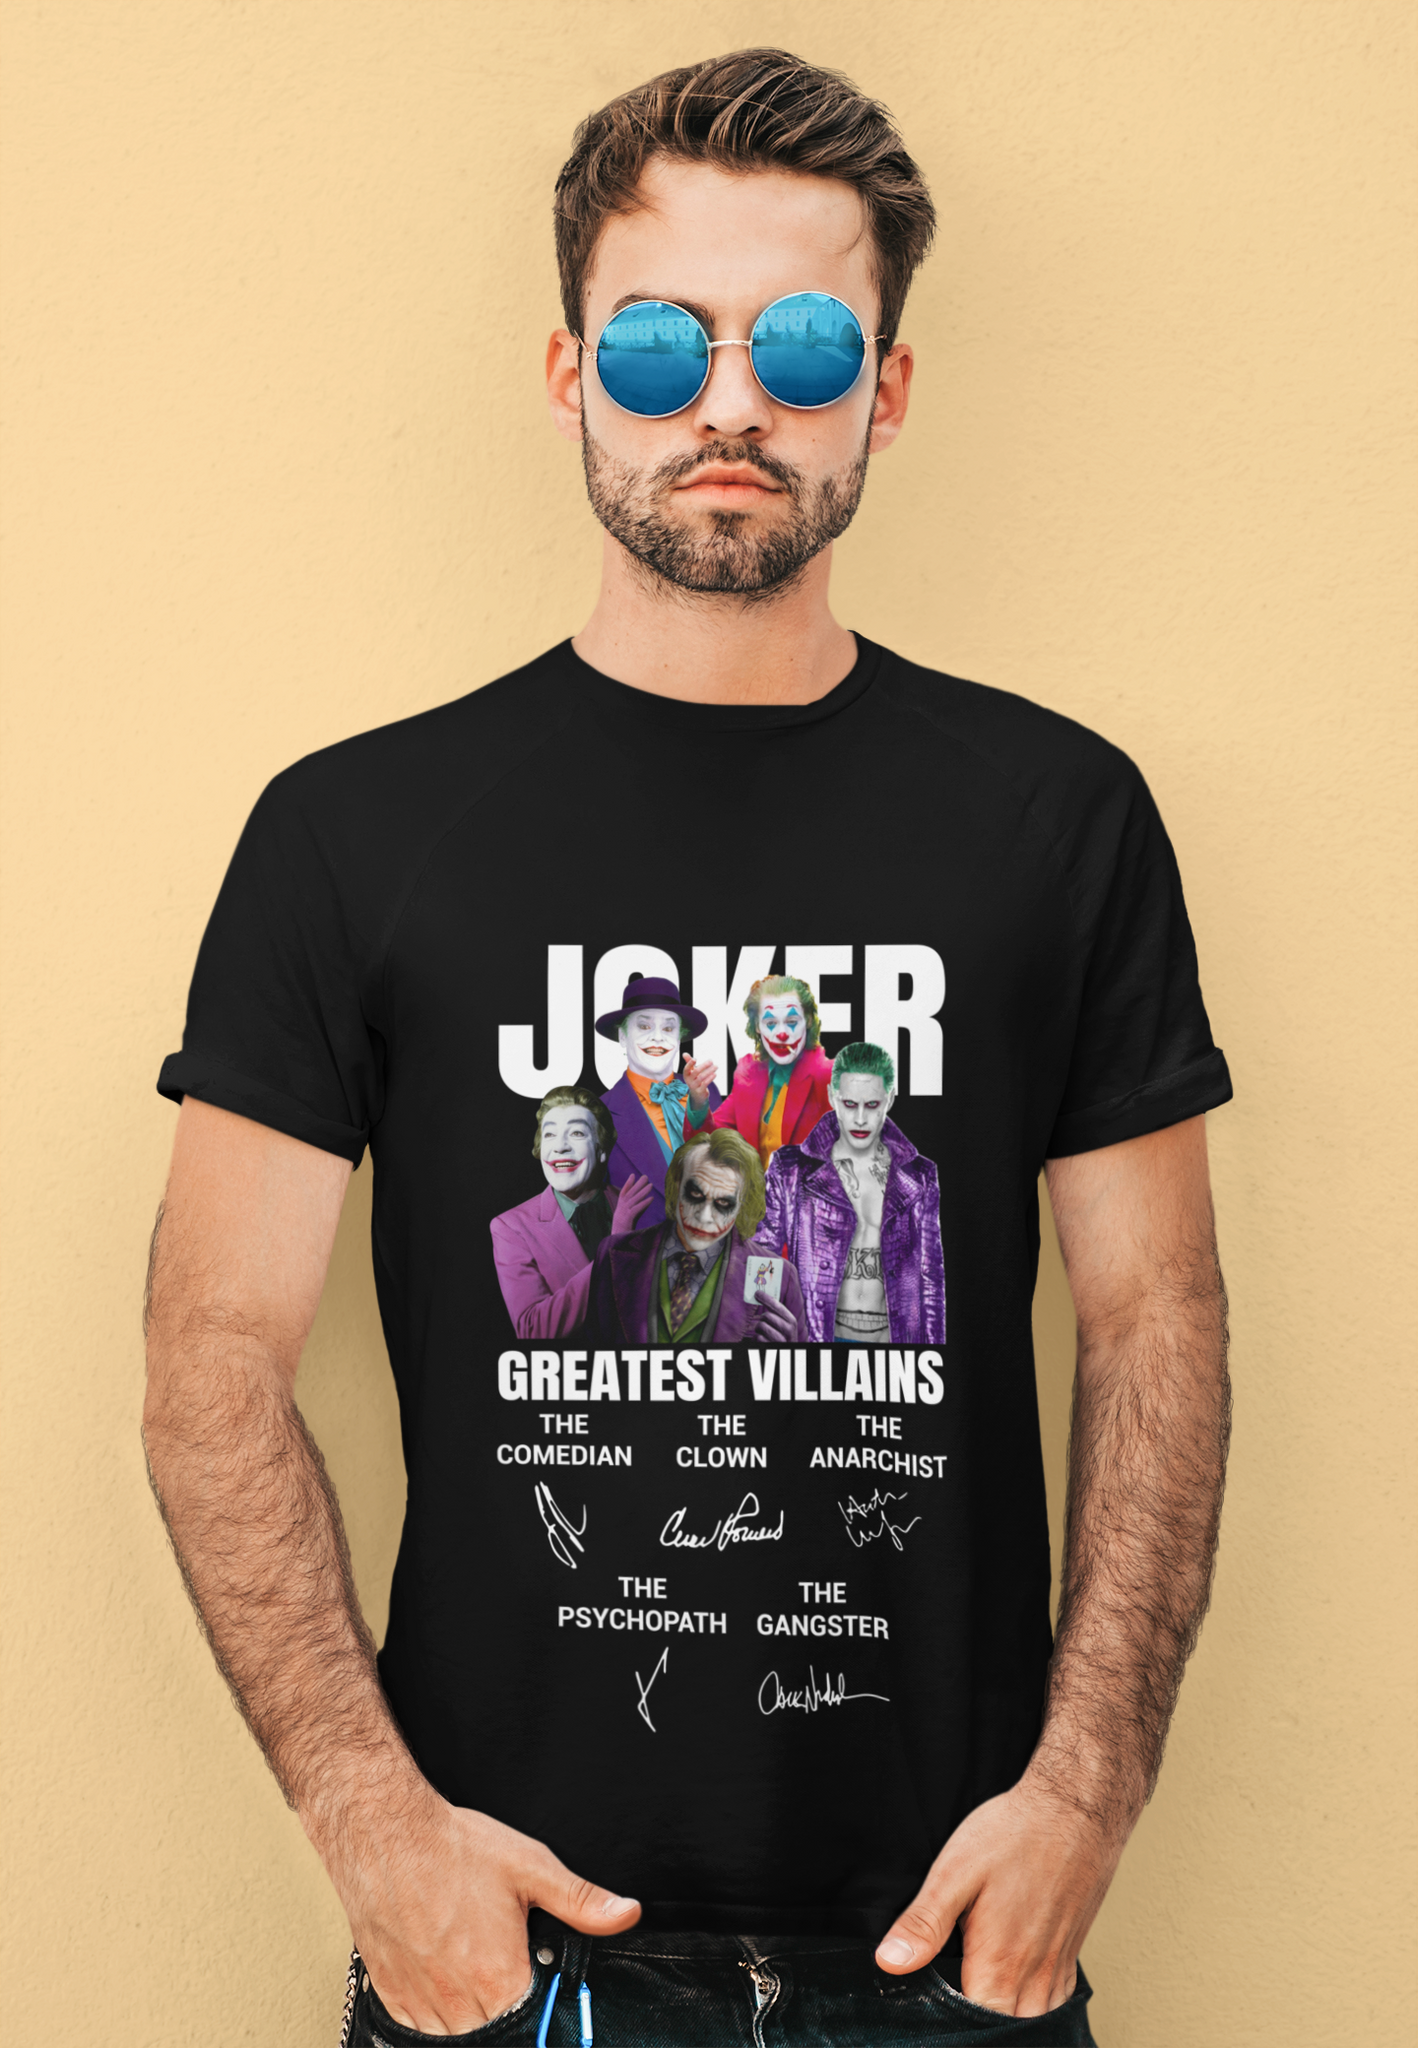 Joker T Shirt, Jokers The Maniac Comedian Psychopath Anarchist Clown T Shirt, Joker Greatest Villains Tshirt, Halloween Gifts